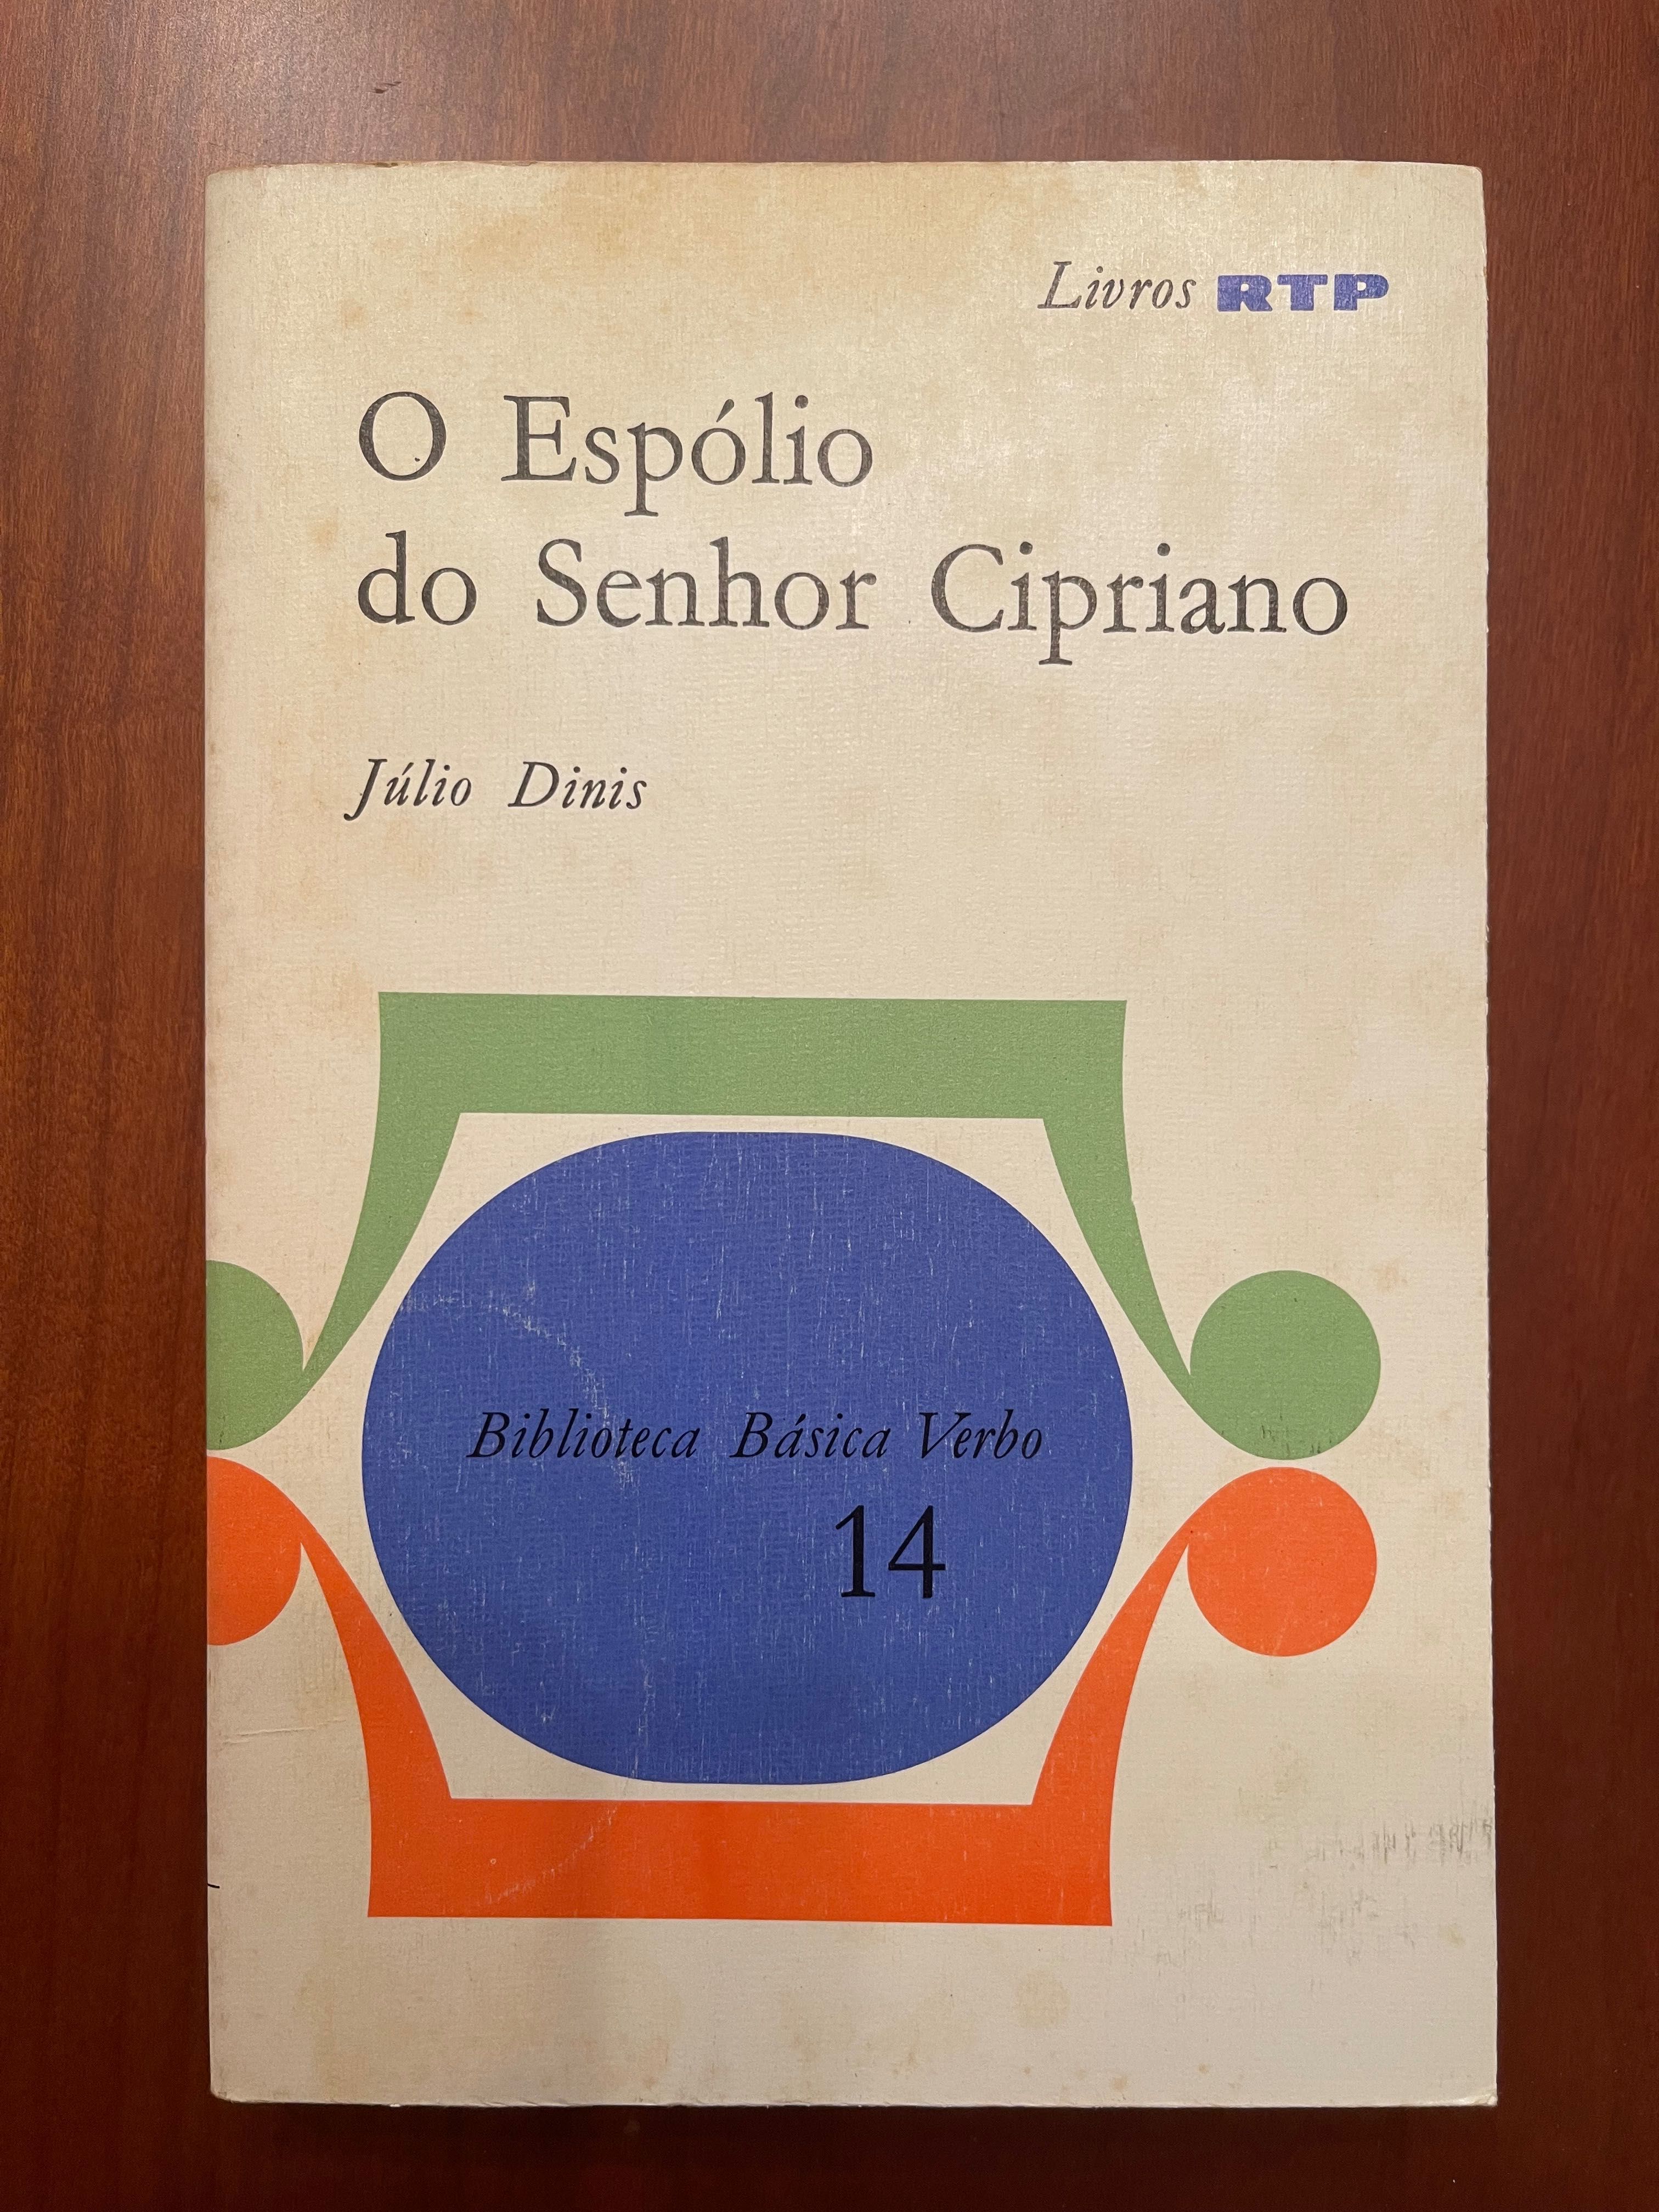 "O Espólio do Senhor Cipriano", de Júlio Dinis